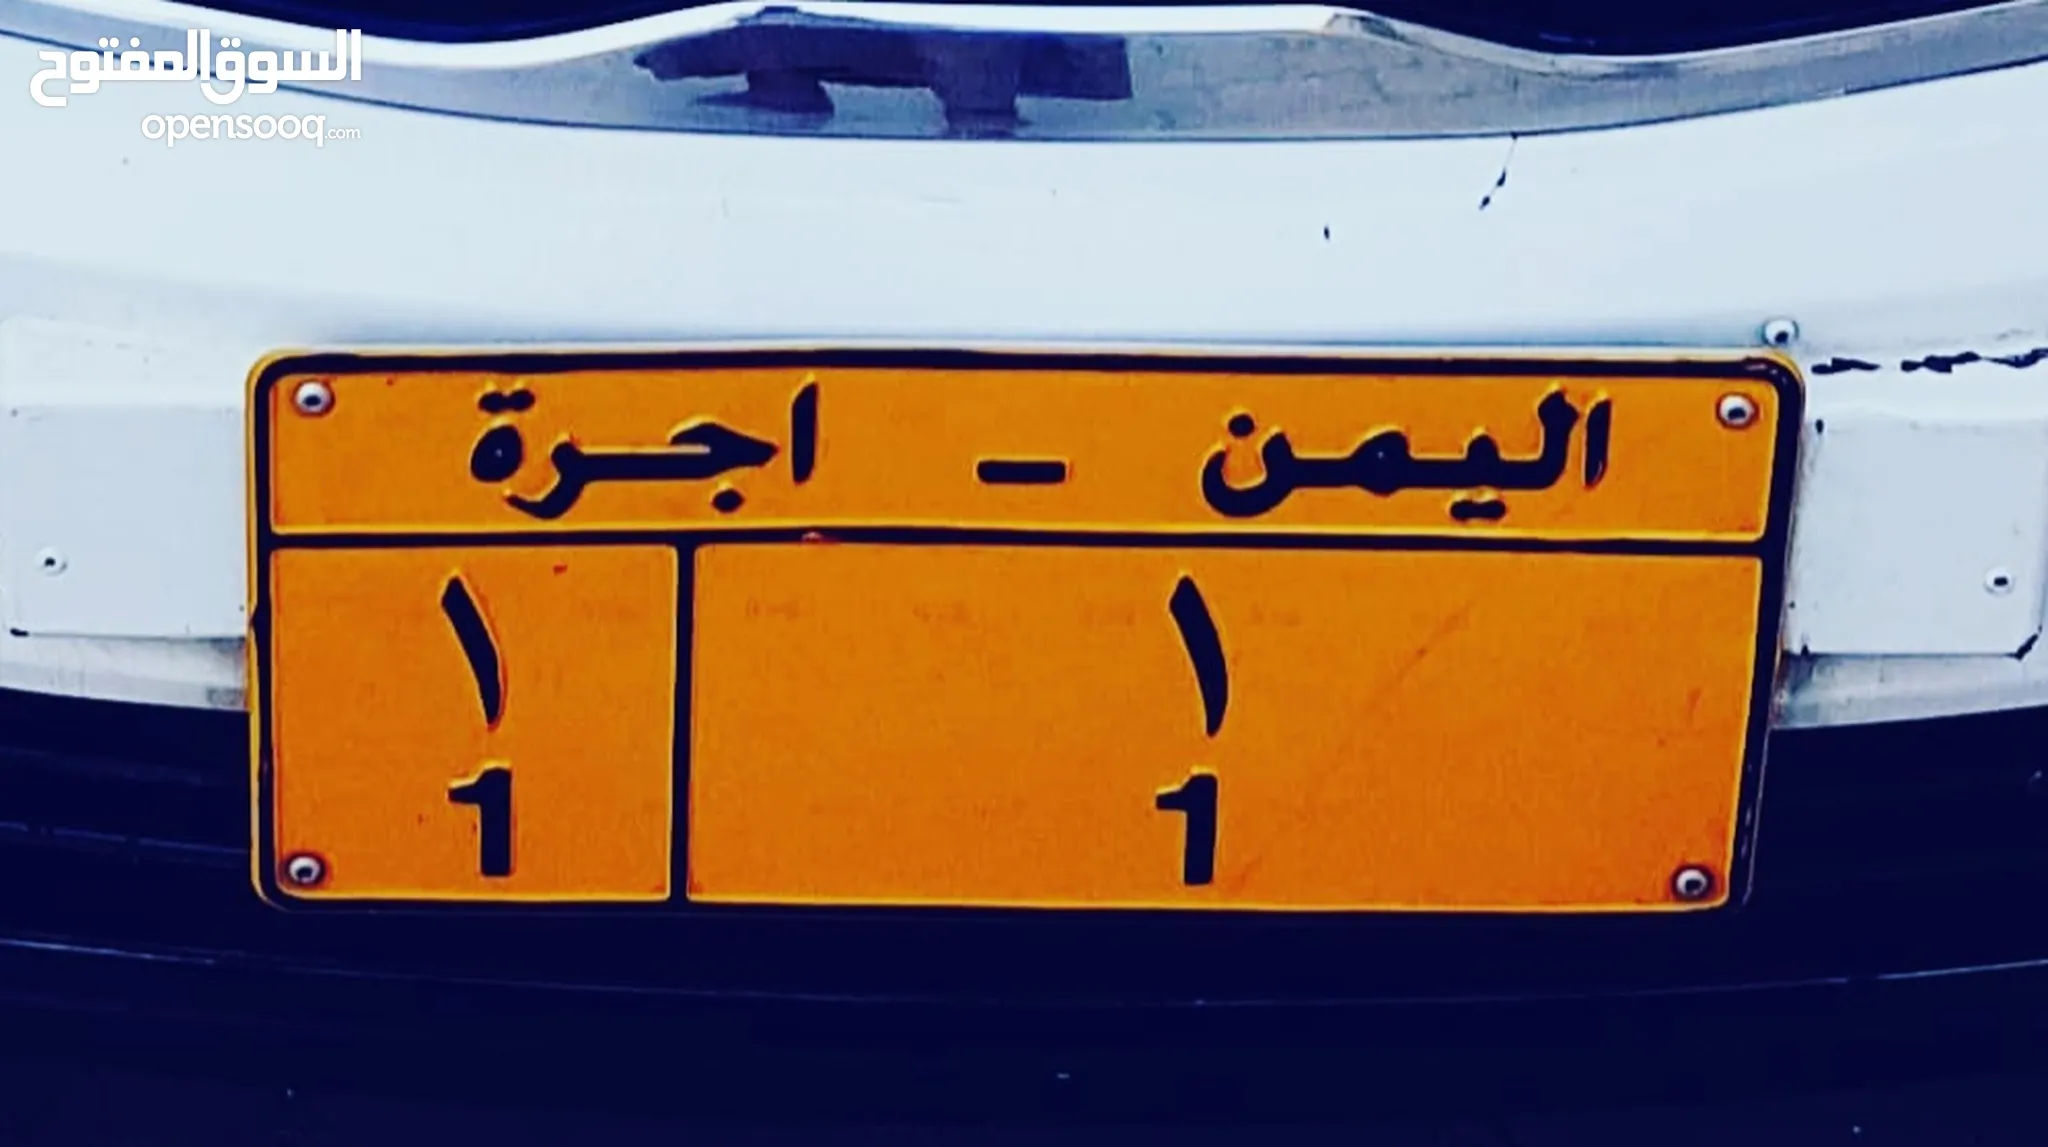 لوحات سيارات مميزة للبيع في اليمن